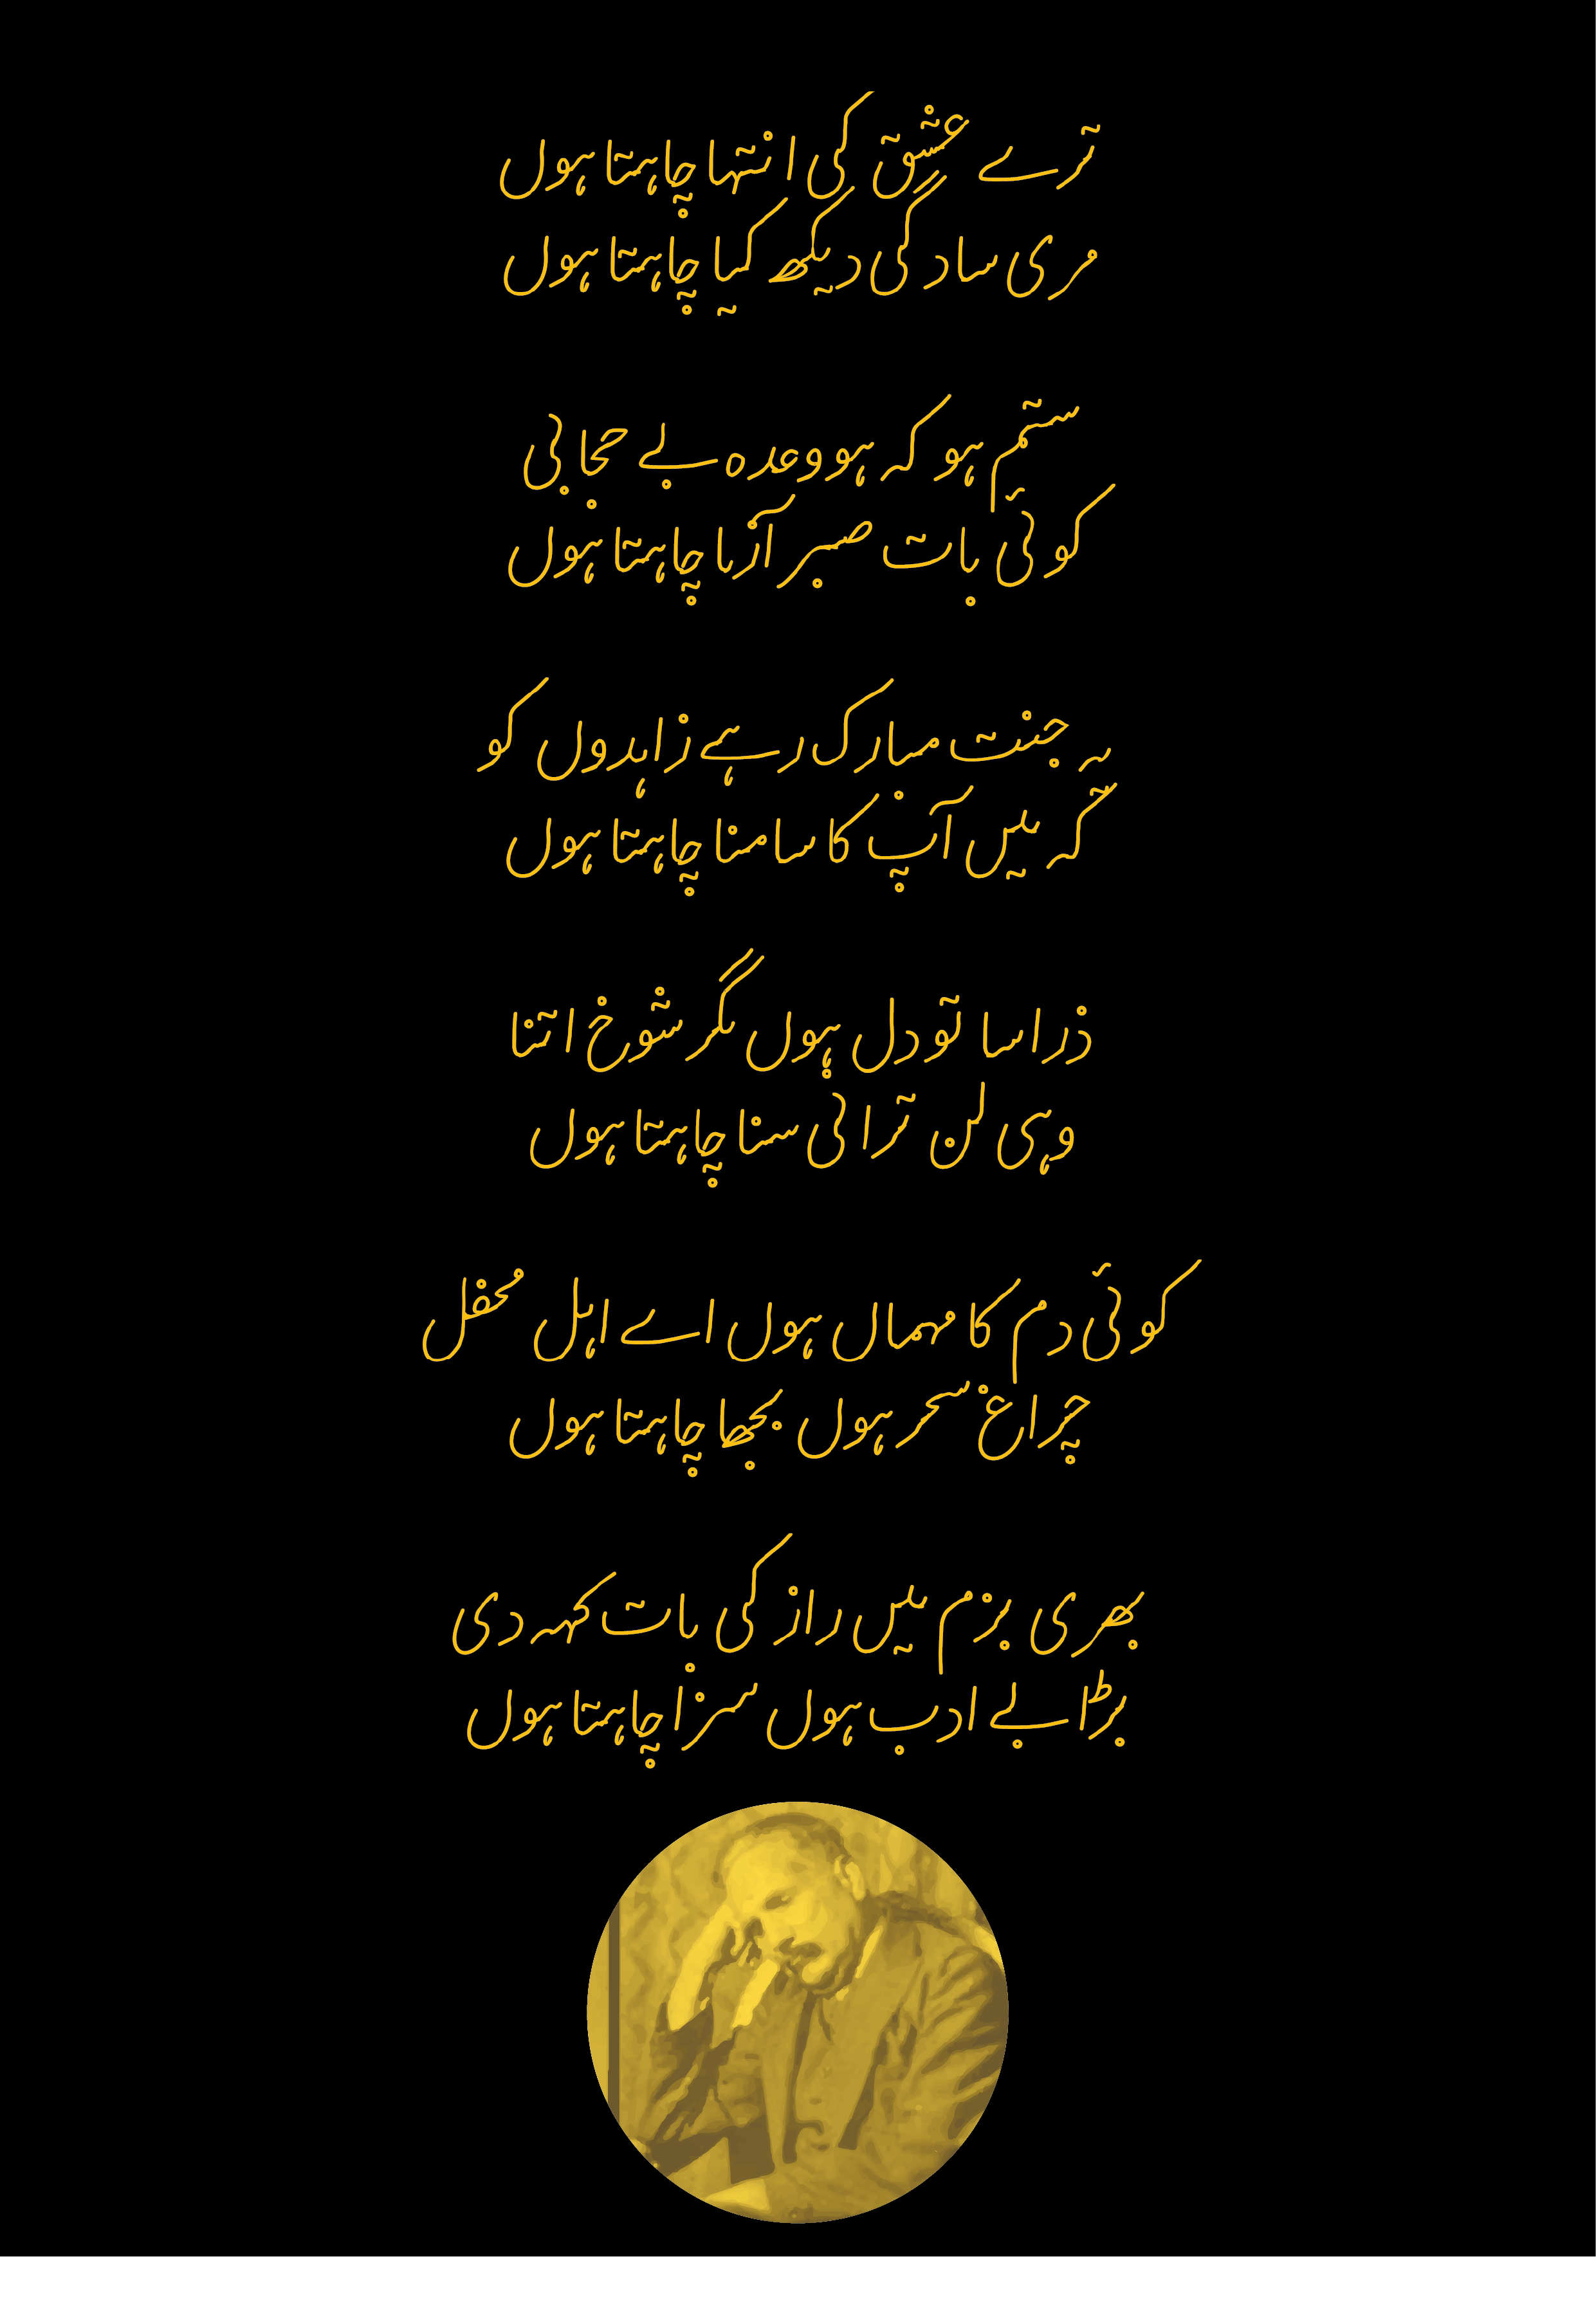 تیرے عشق کی انتہا چاہتاہوں Urdu Poetry By Allamah Muhammad Iqbal Scrolller 1130